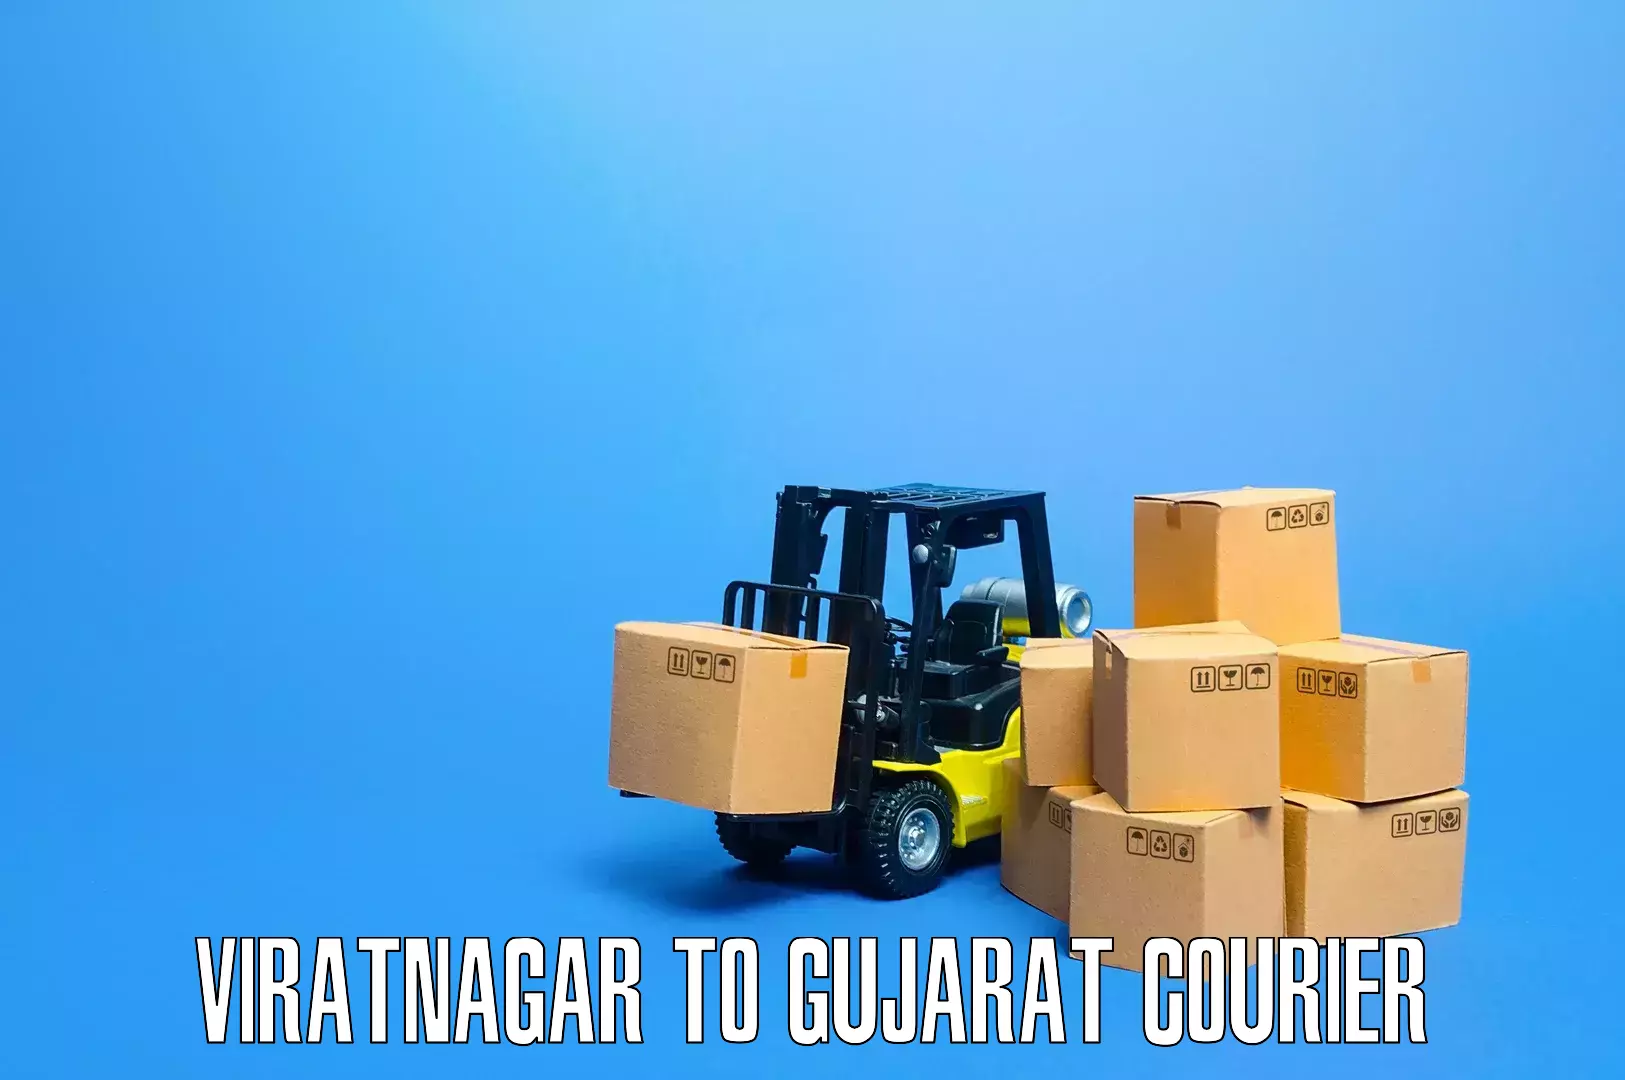 Residential furniture movers in Viratnagar to Gujarat